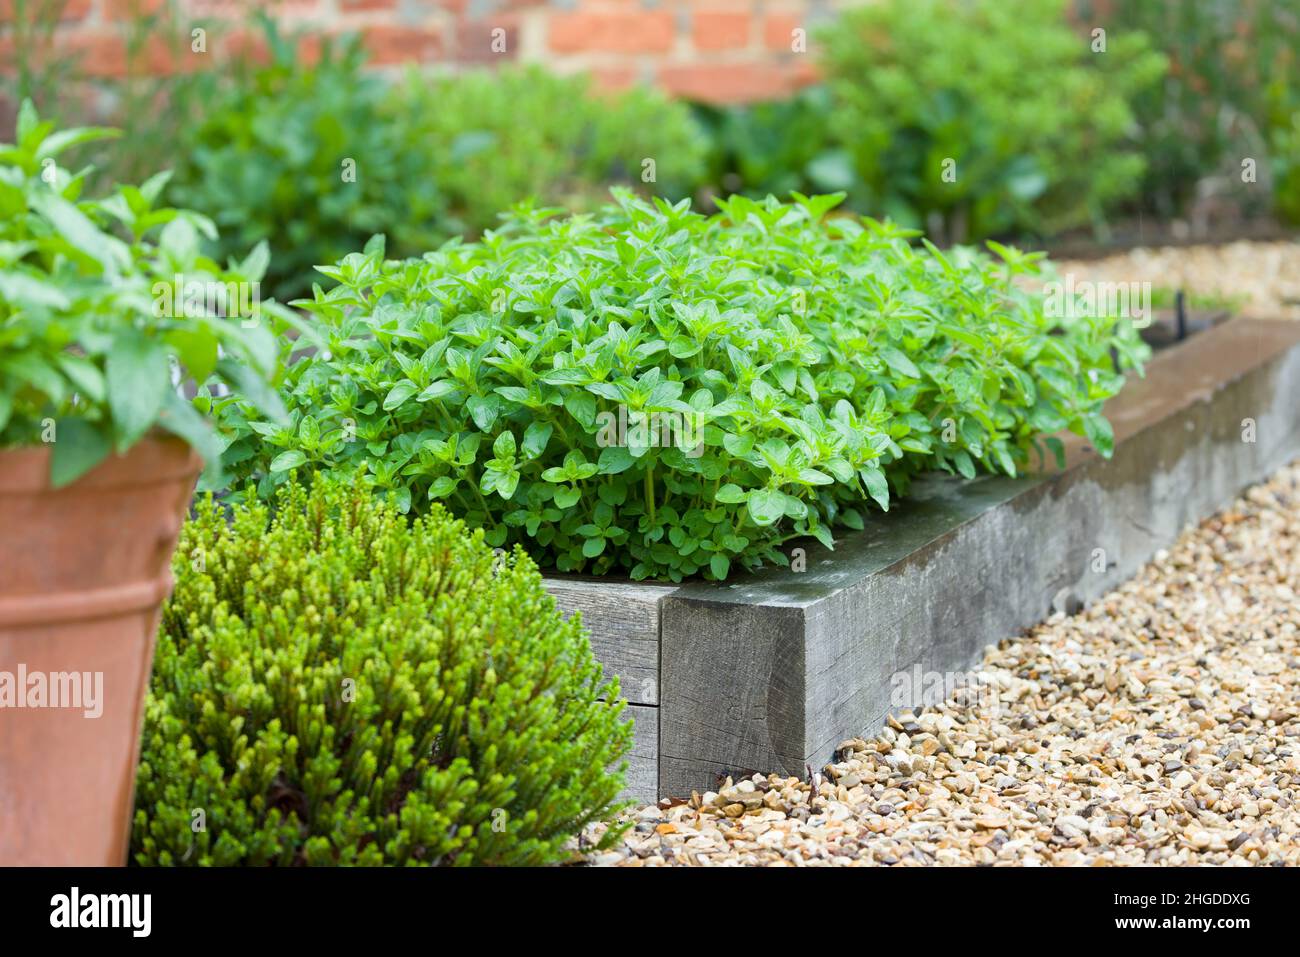 Frische Kräuter wachsen in einem Garten, Oranganopflanze in einem Container, UK Garten Details Stockfoto